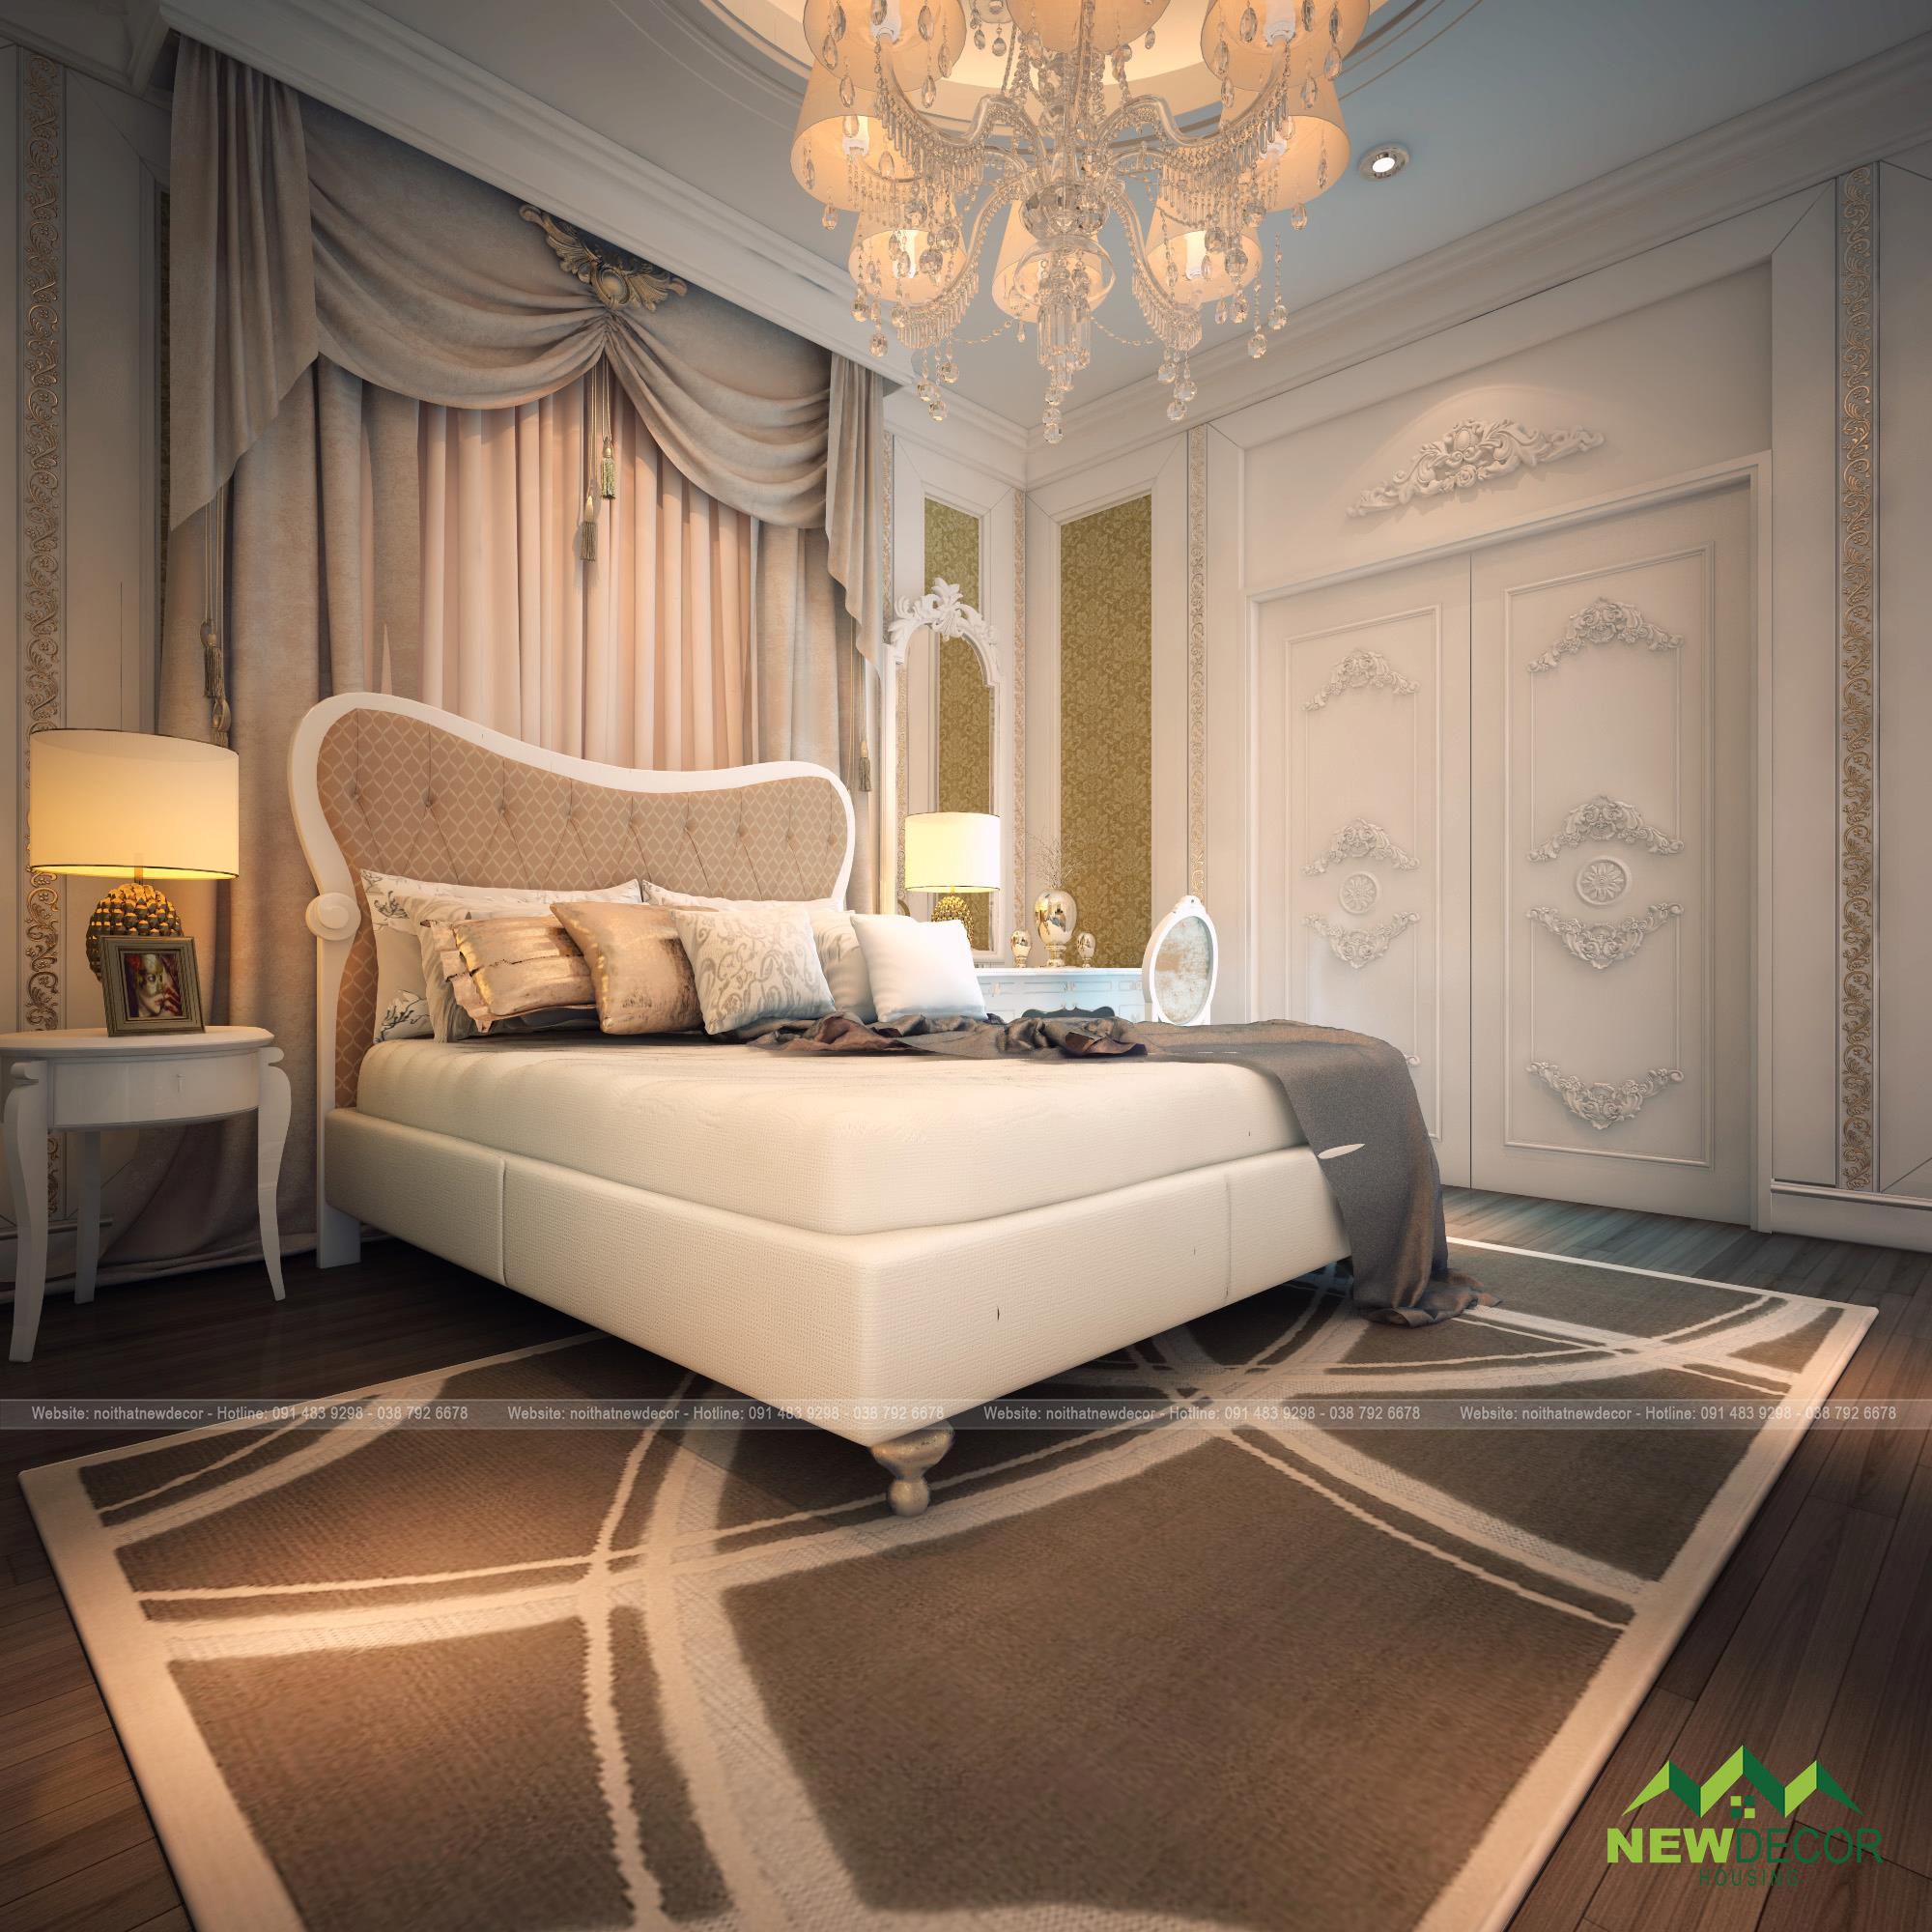 Phòng ngủ được sử dụng màu trắng và xám, tạo nên không gian hiện đại hơn.